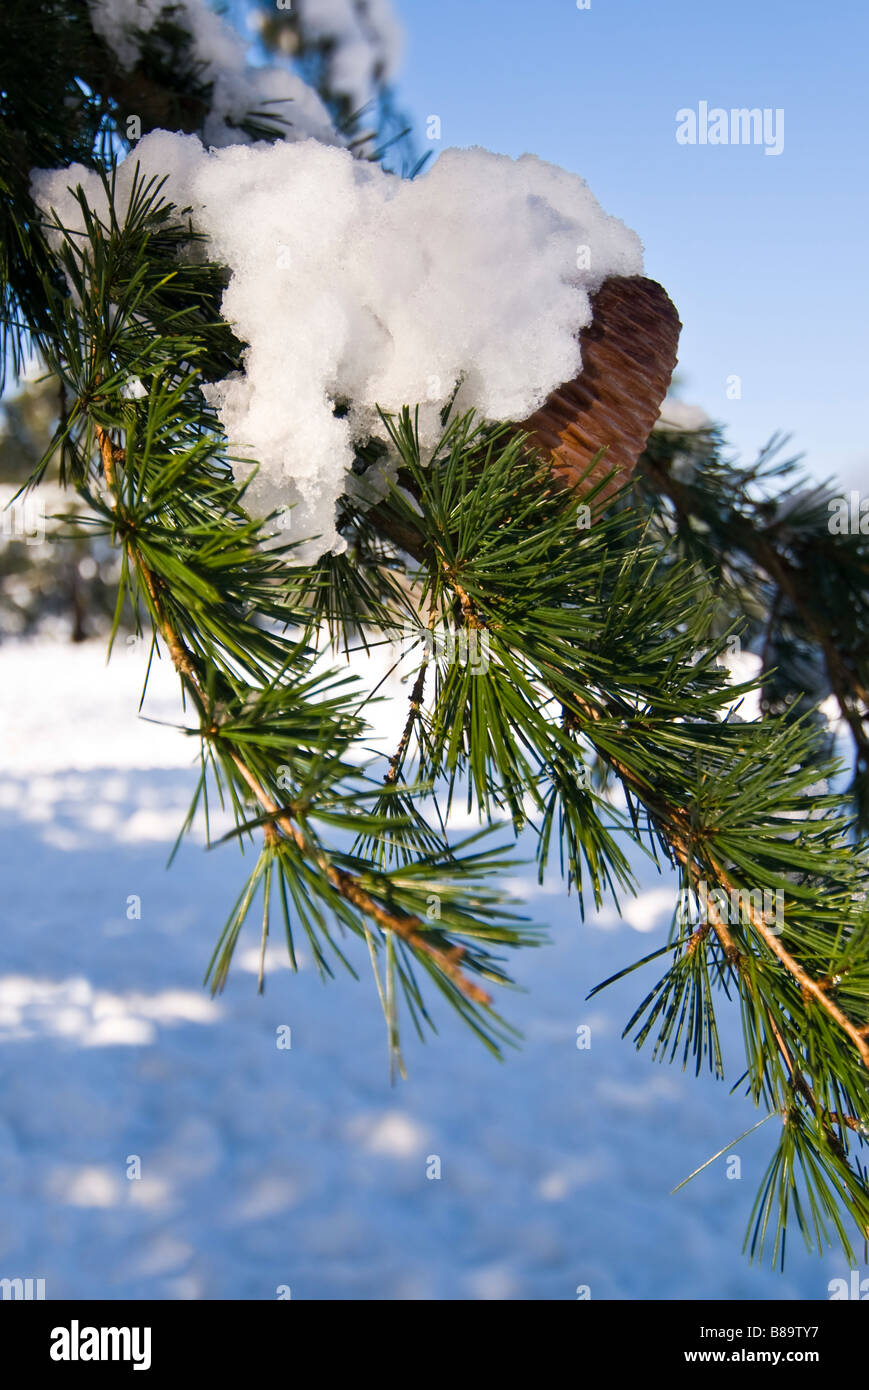 Close up vertical d'une branche d'un Cèdre de l'arbre dans la neige avec les aiguilles vertes et cône mature au soleil Banque D'Images